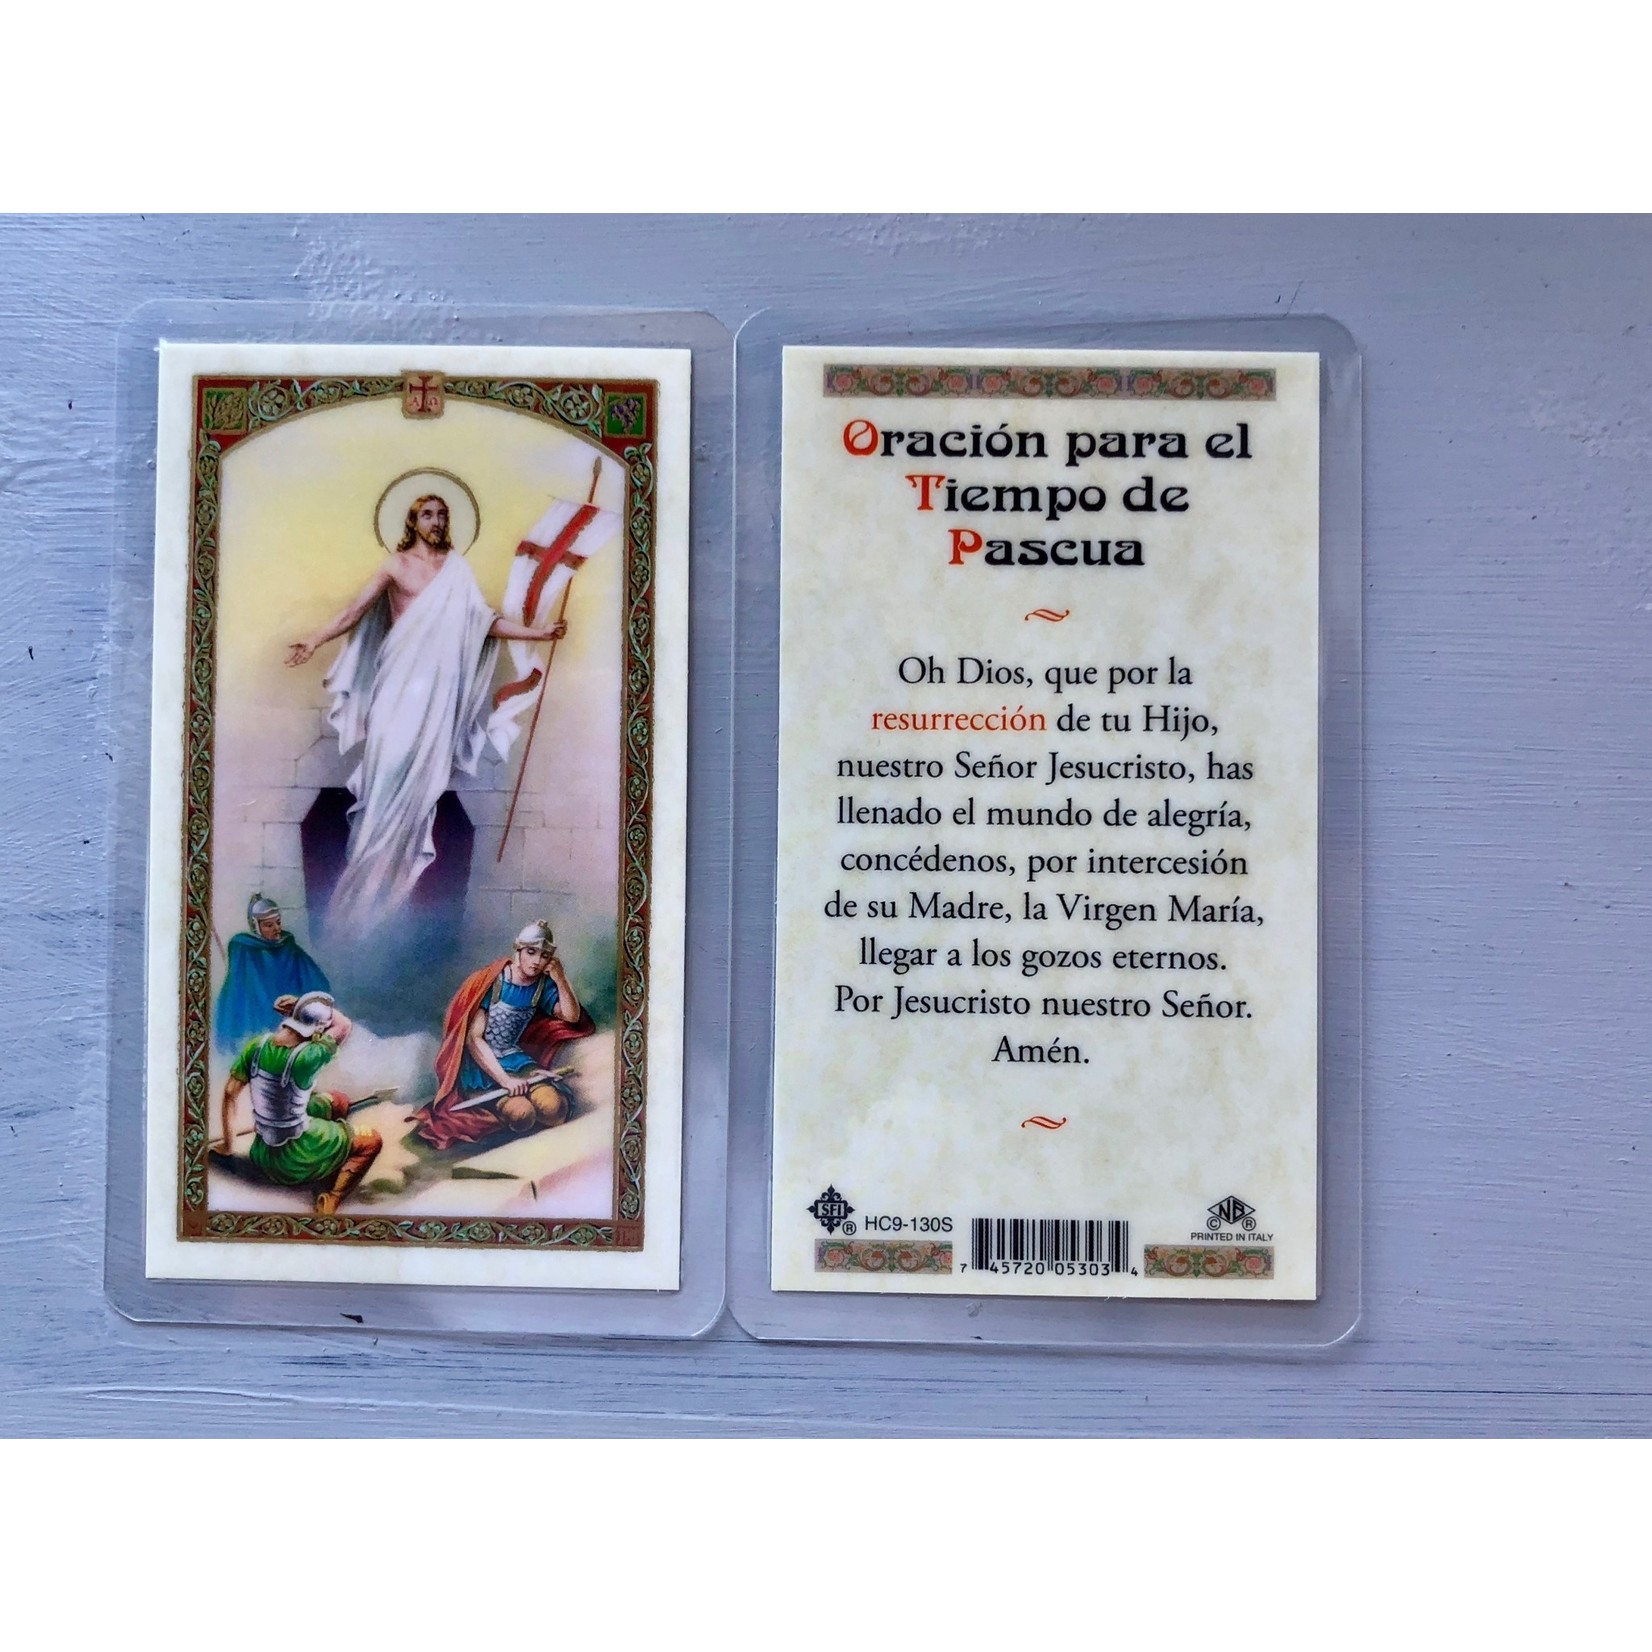 Oracion para el Tiempo de Pascua Prayer Card (Spanish)